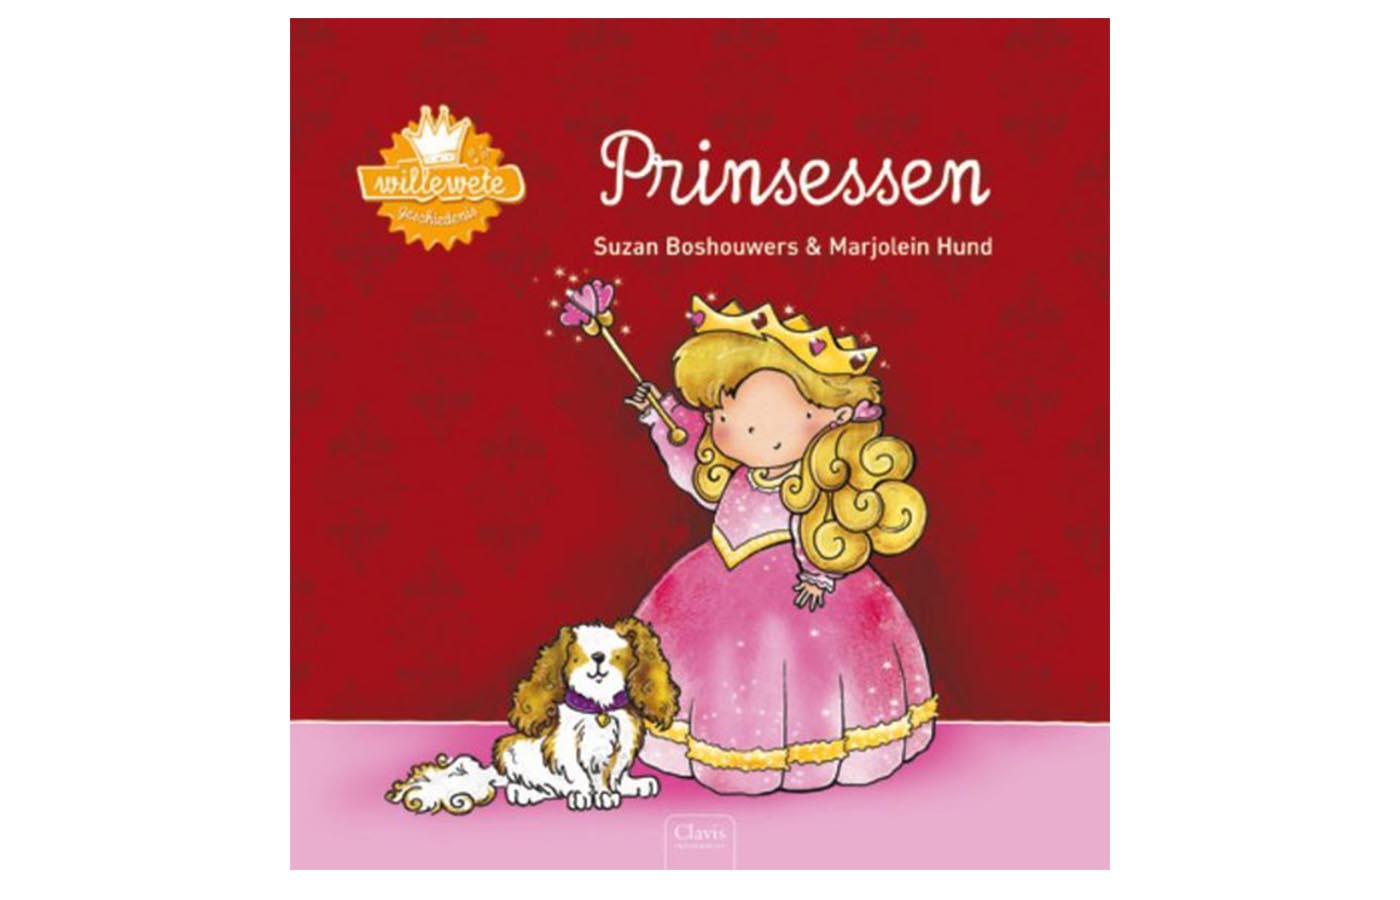 Willewete Prinsessen - Boshouwers